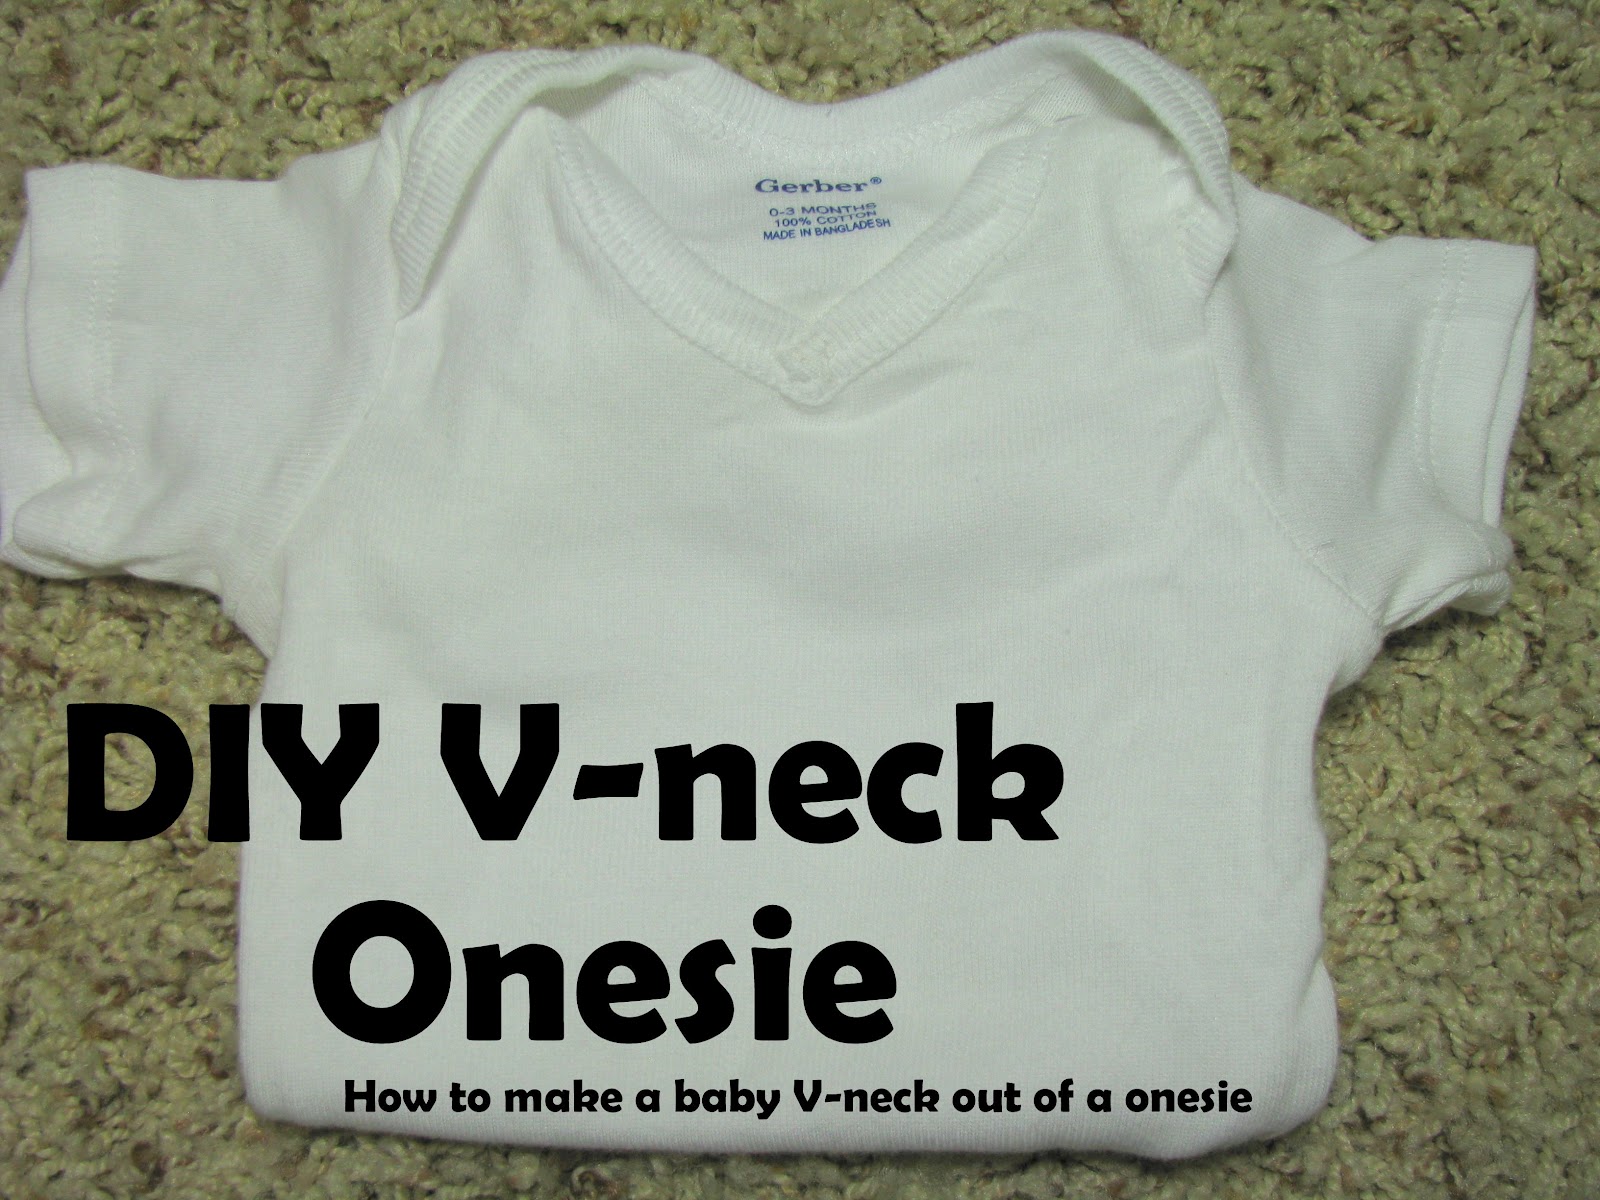 I Heart Pears: DIY baby V-neck